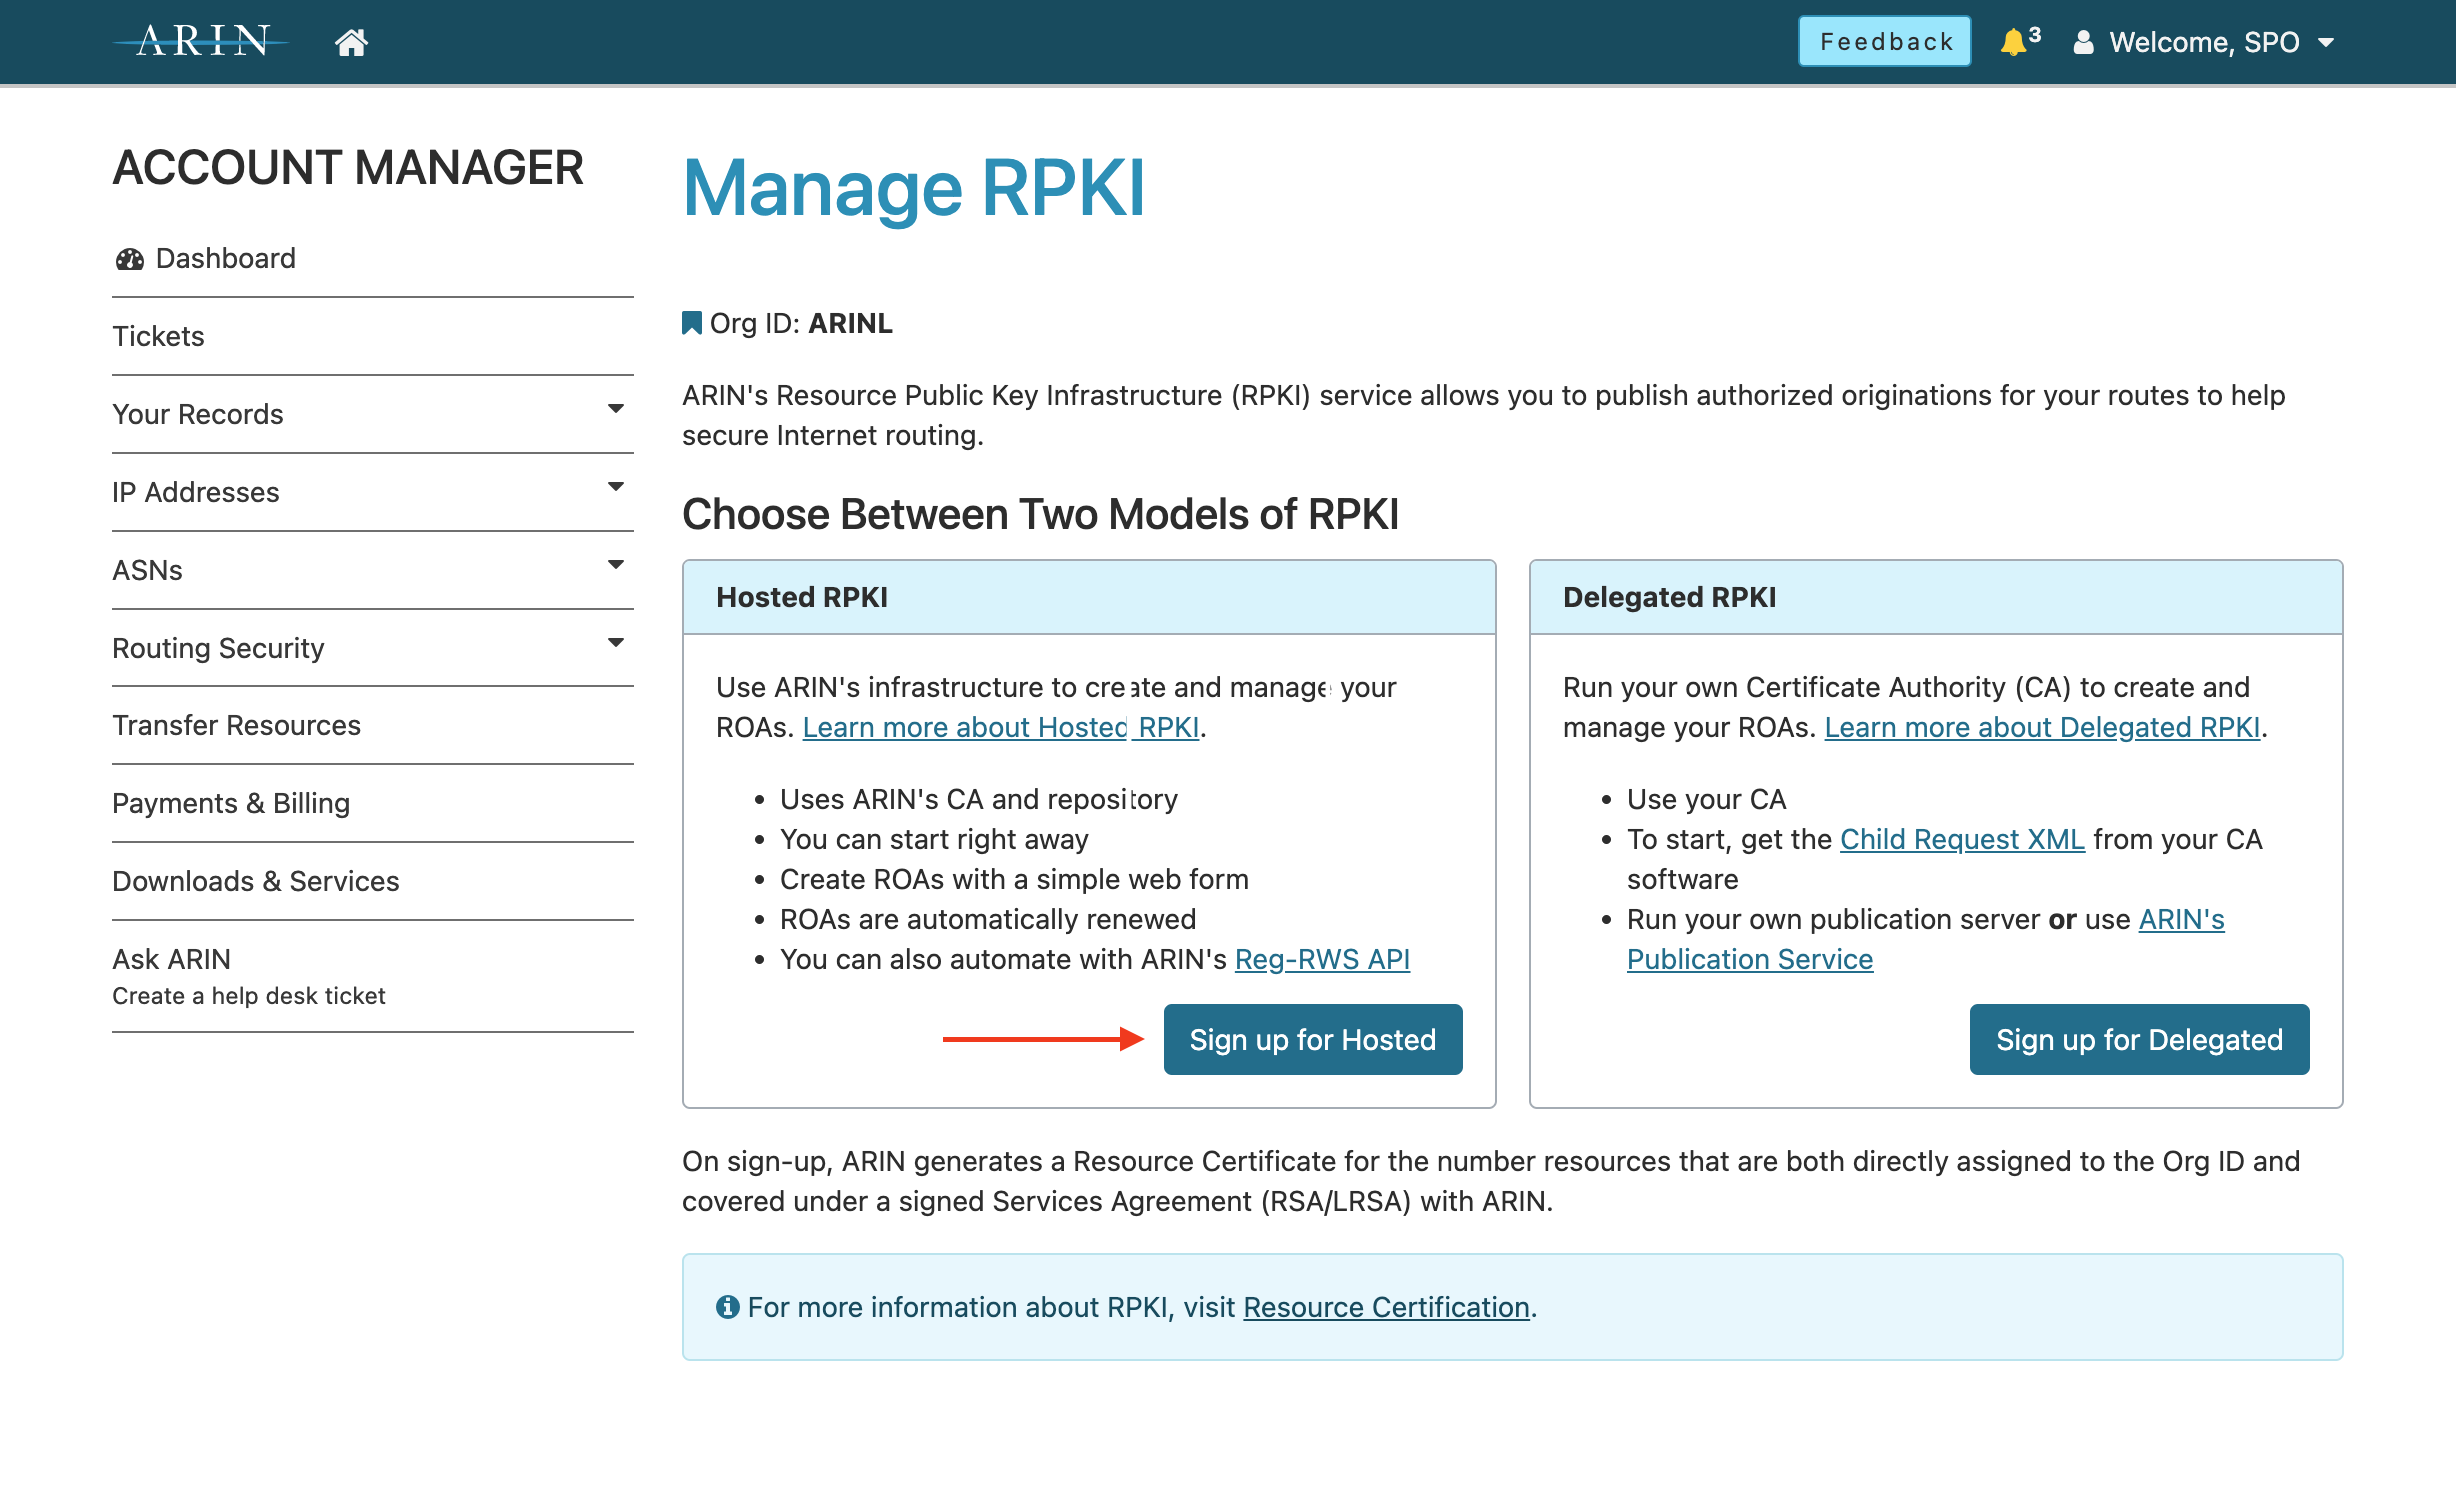 Choose between two models of RPKI